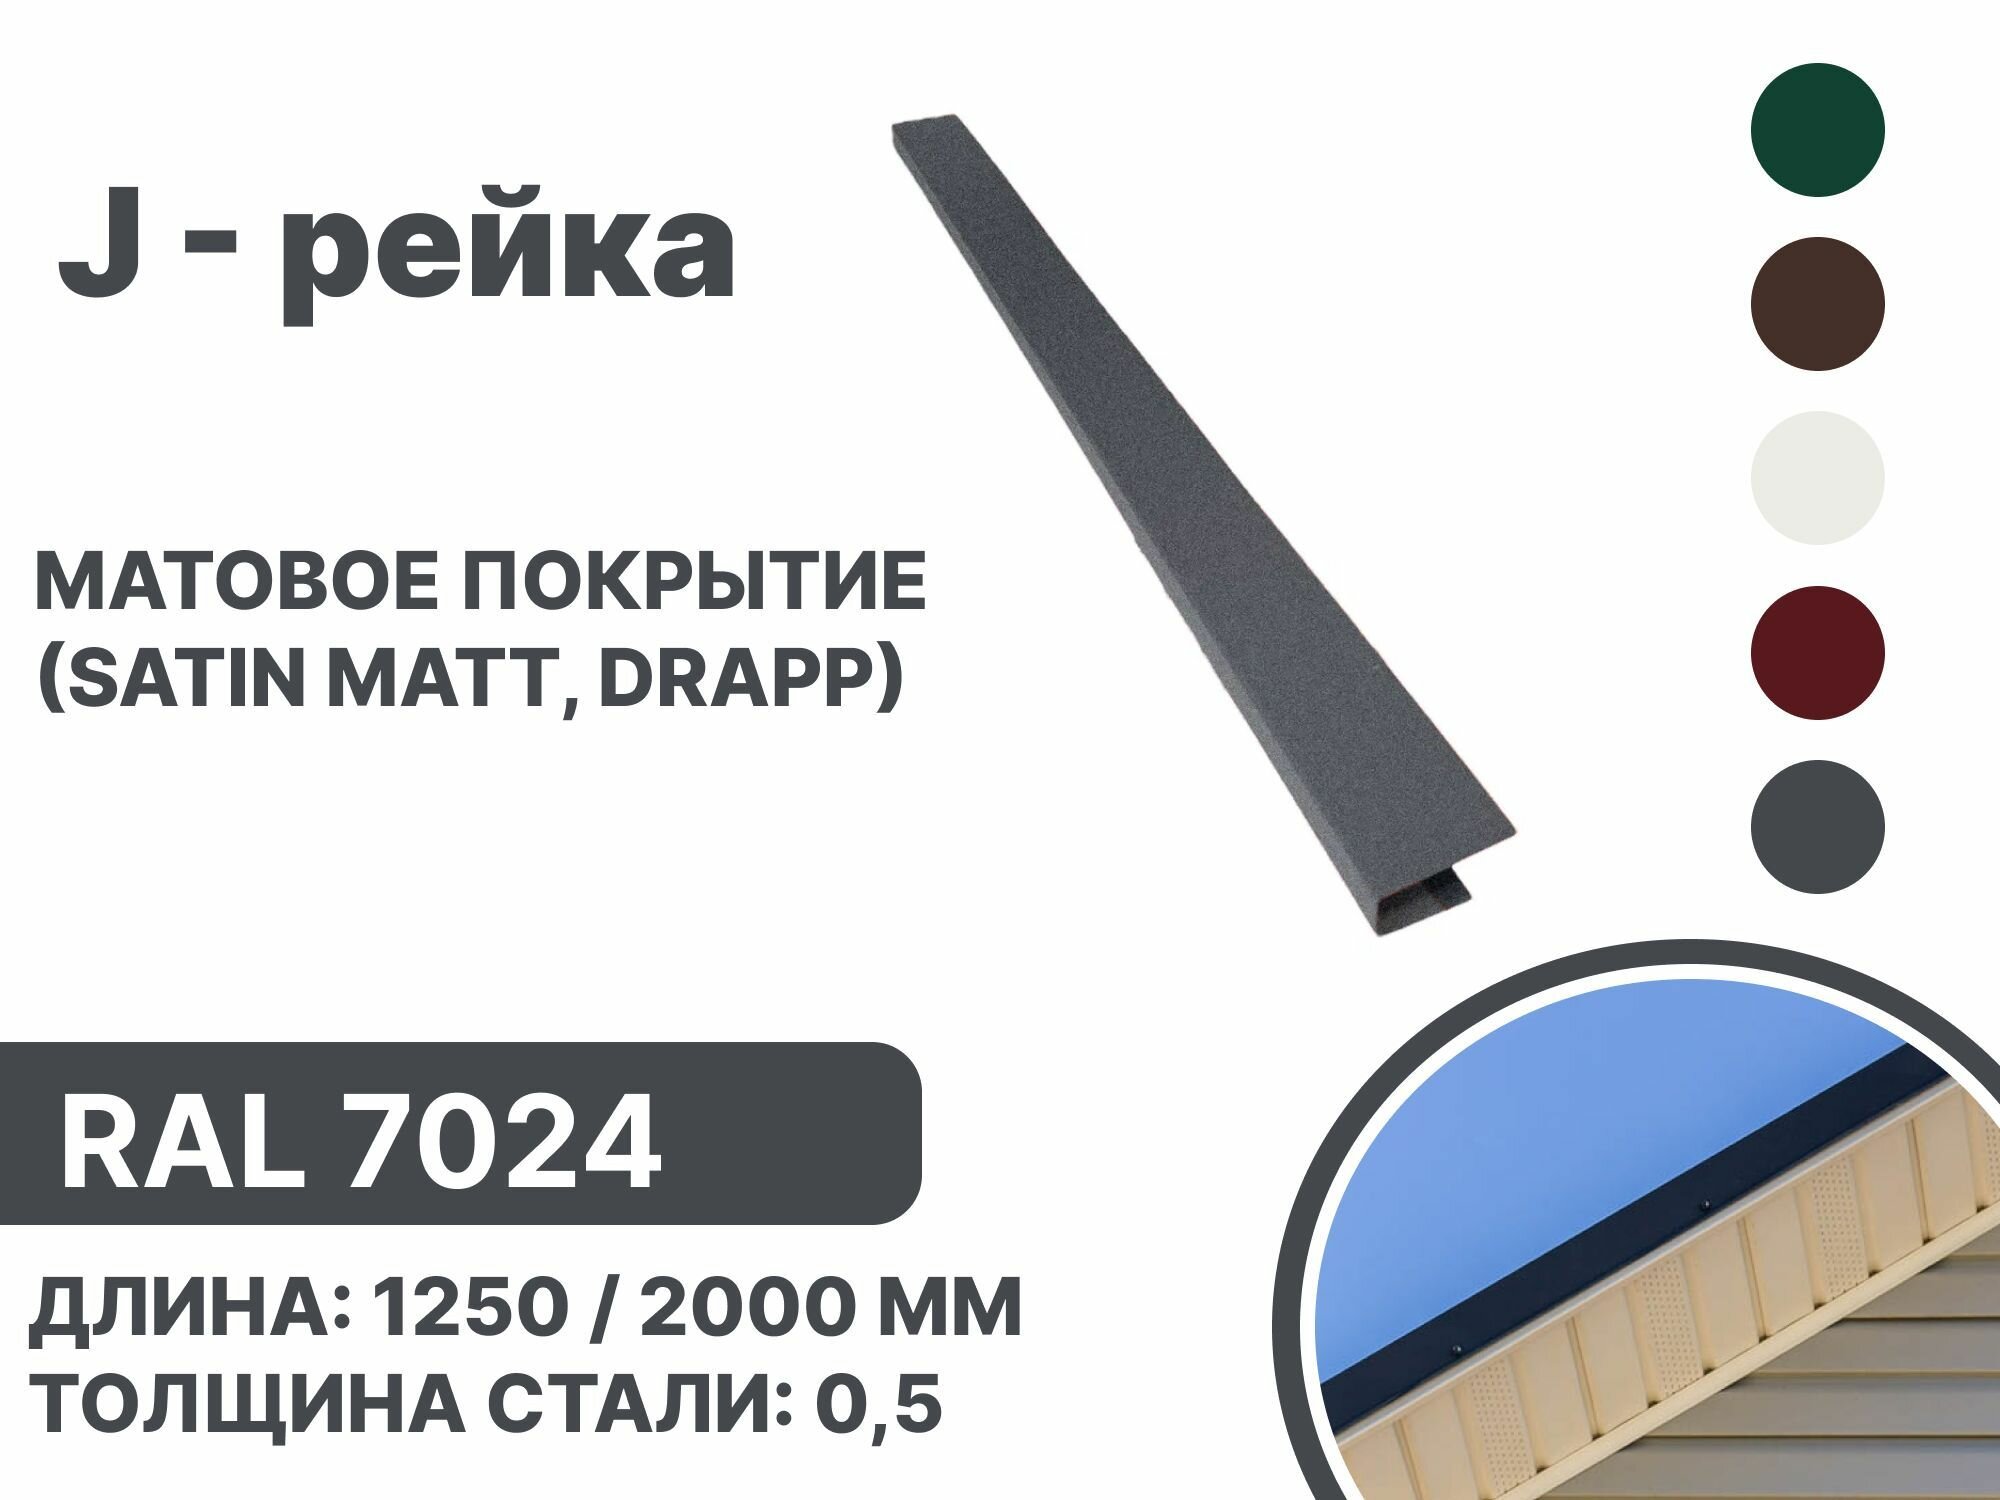 J-рейка матовая (Satin matt,drap) для металлочерепицы и гибкой кровли RAL 7024 1250мм 4 шт в упаковке - фотография № 1